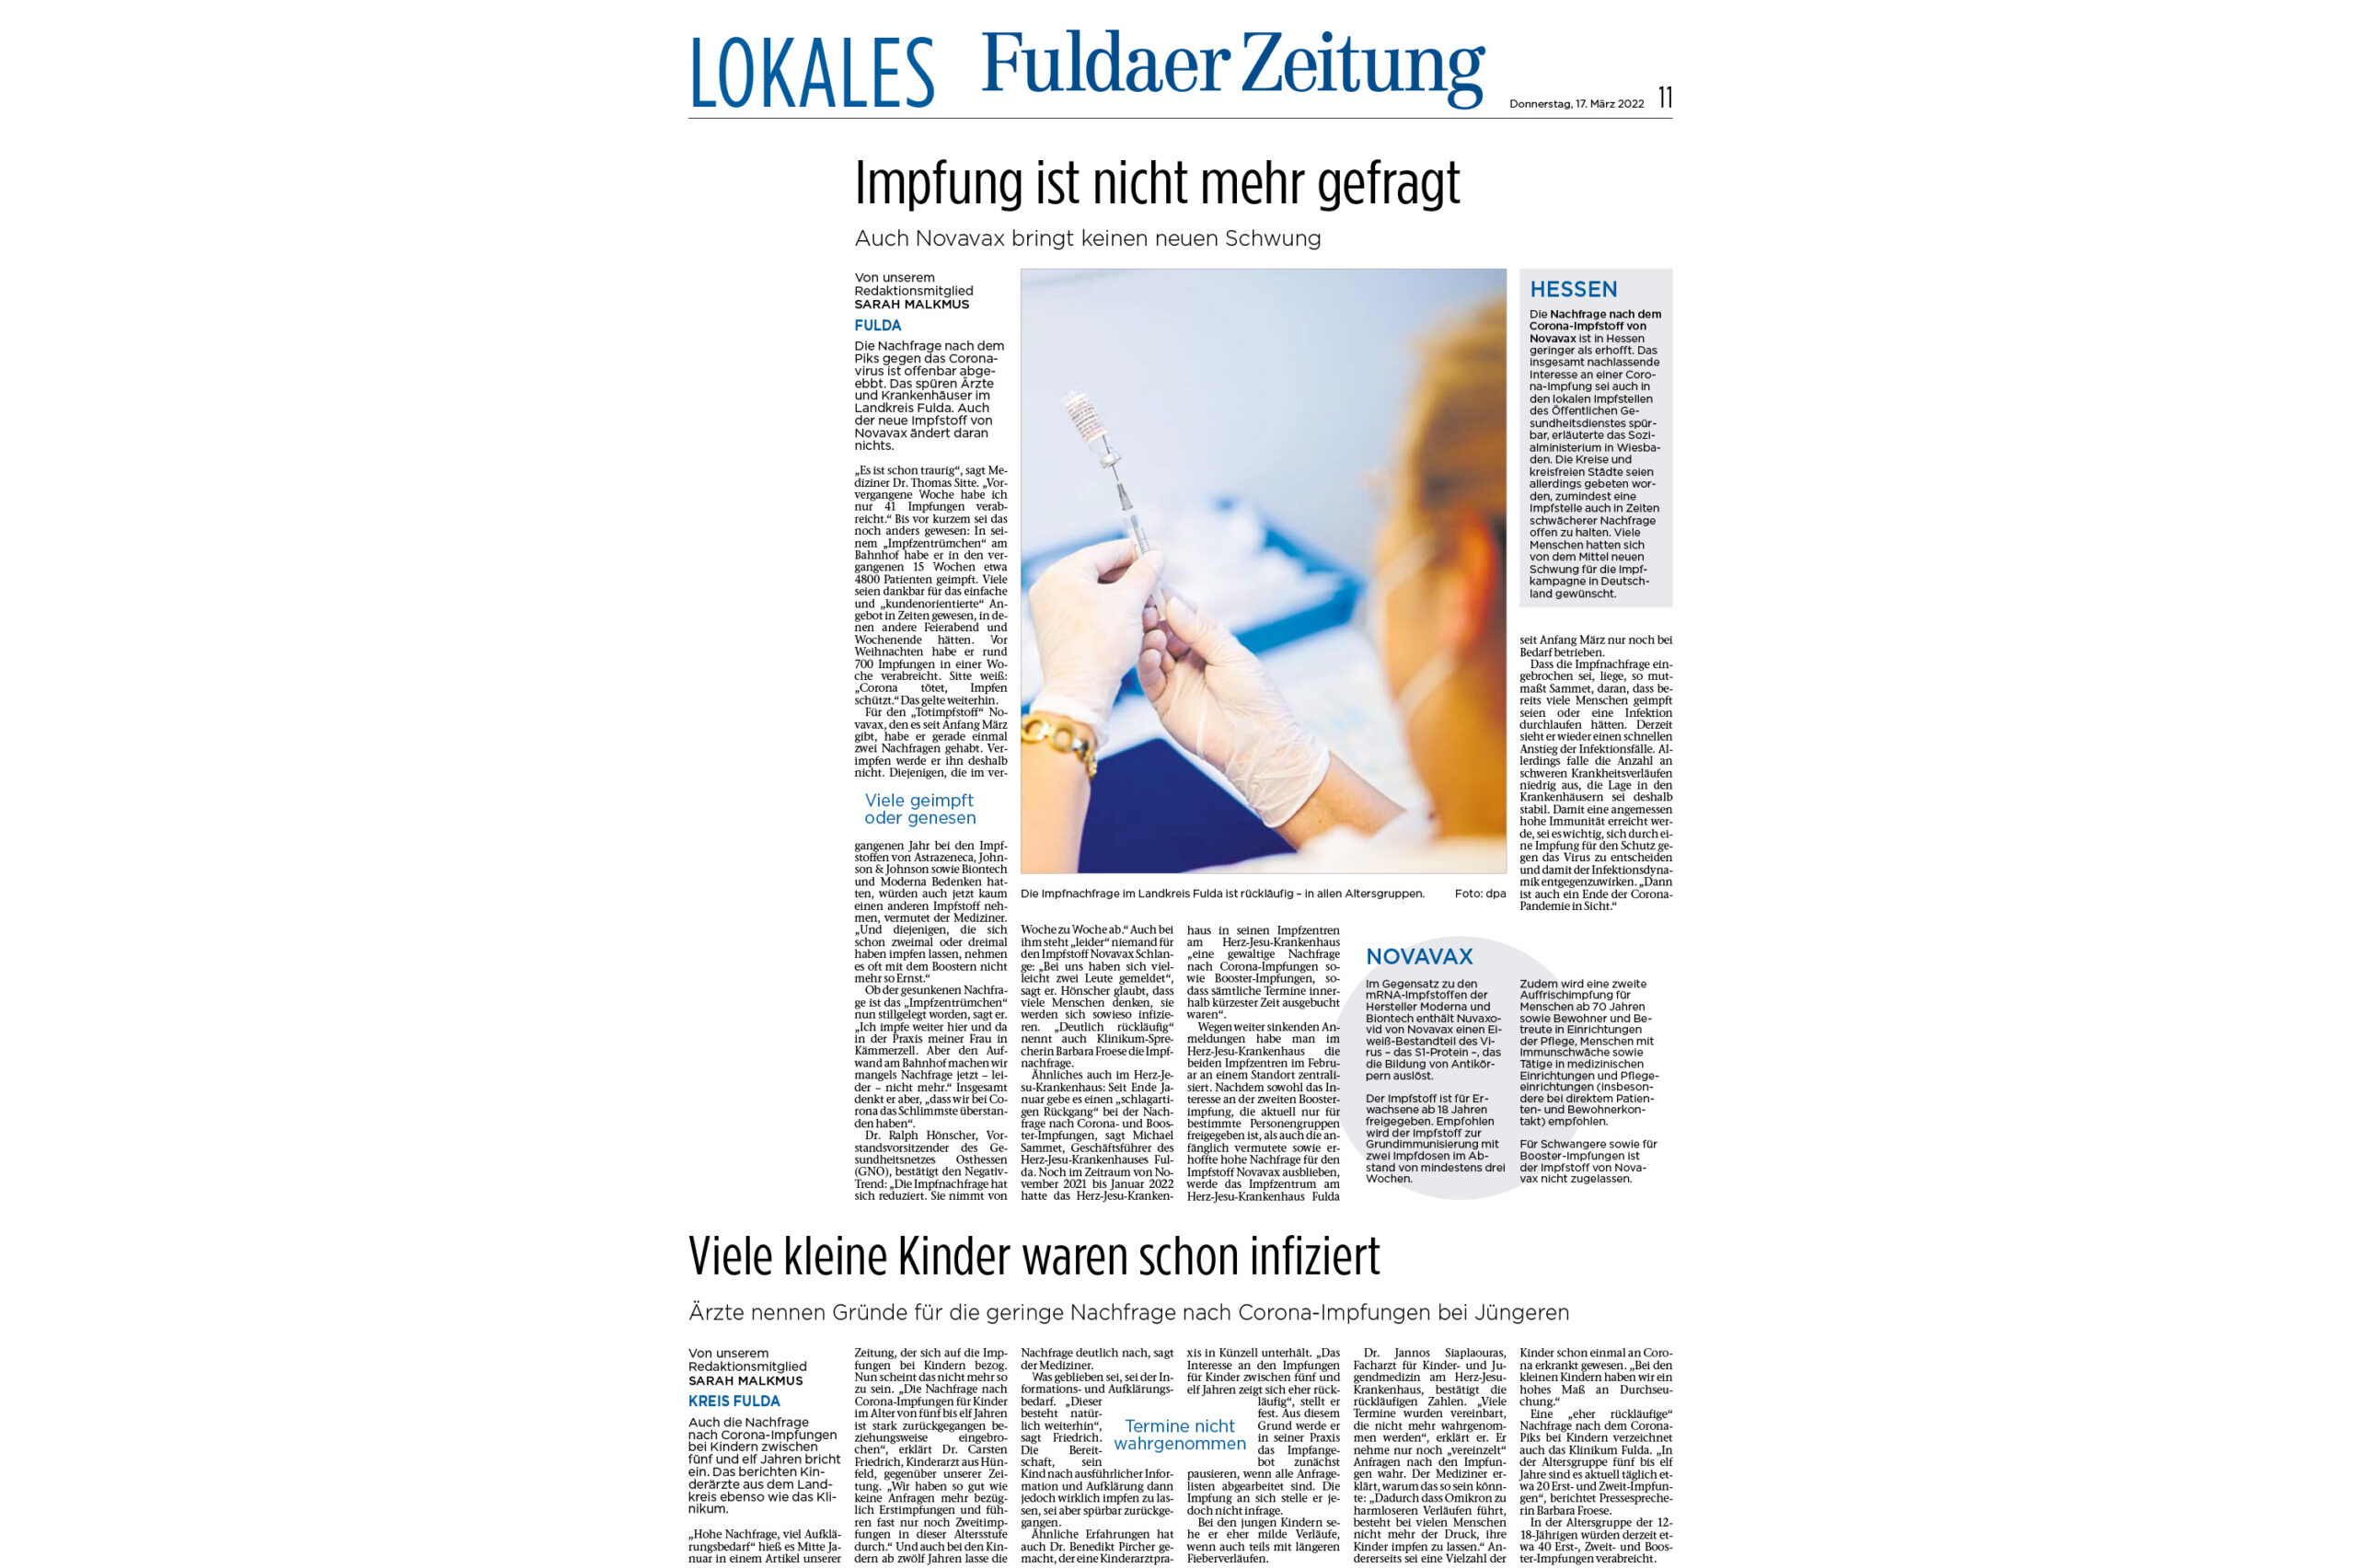 Fuldaer Zeitung: Nachfrage nach Corona-Impfung ist eingebrochen - Ärzte nennen Gründe